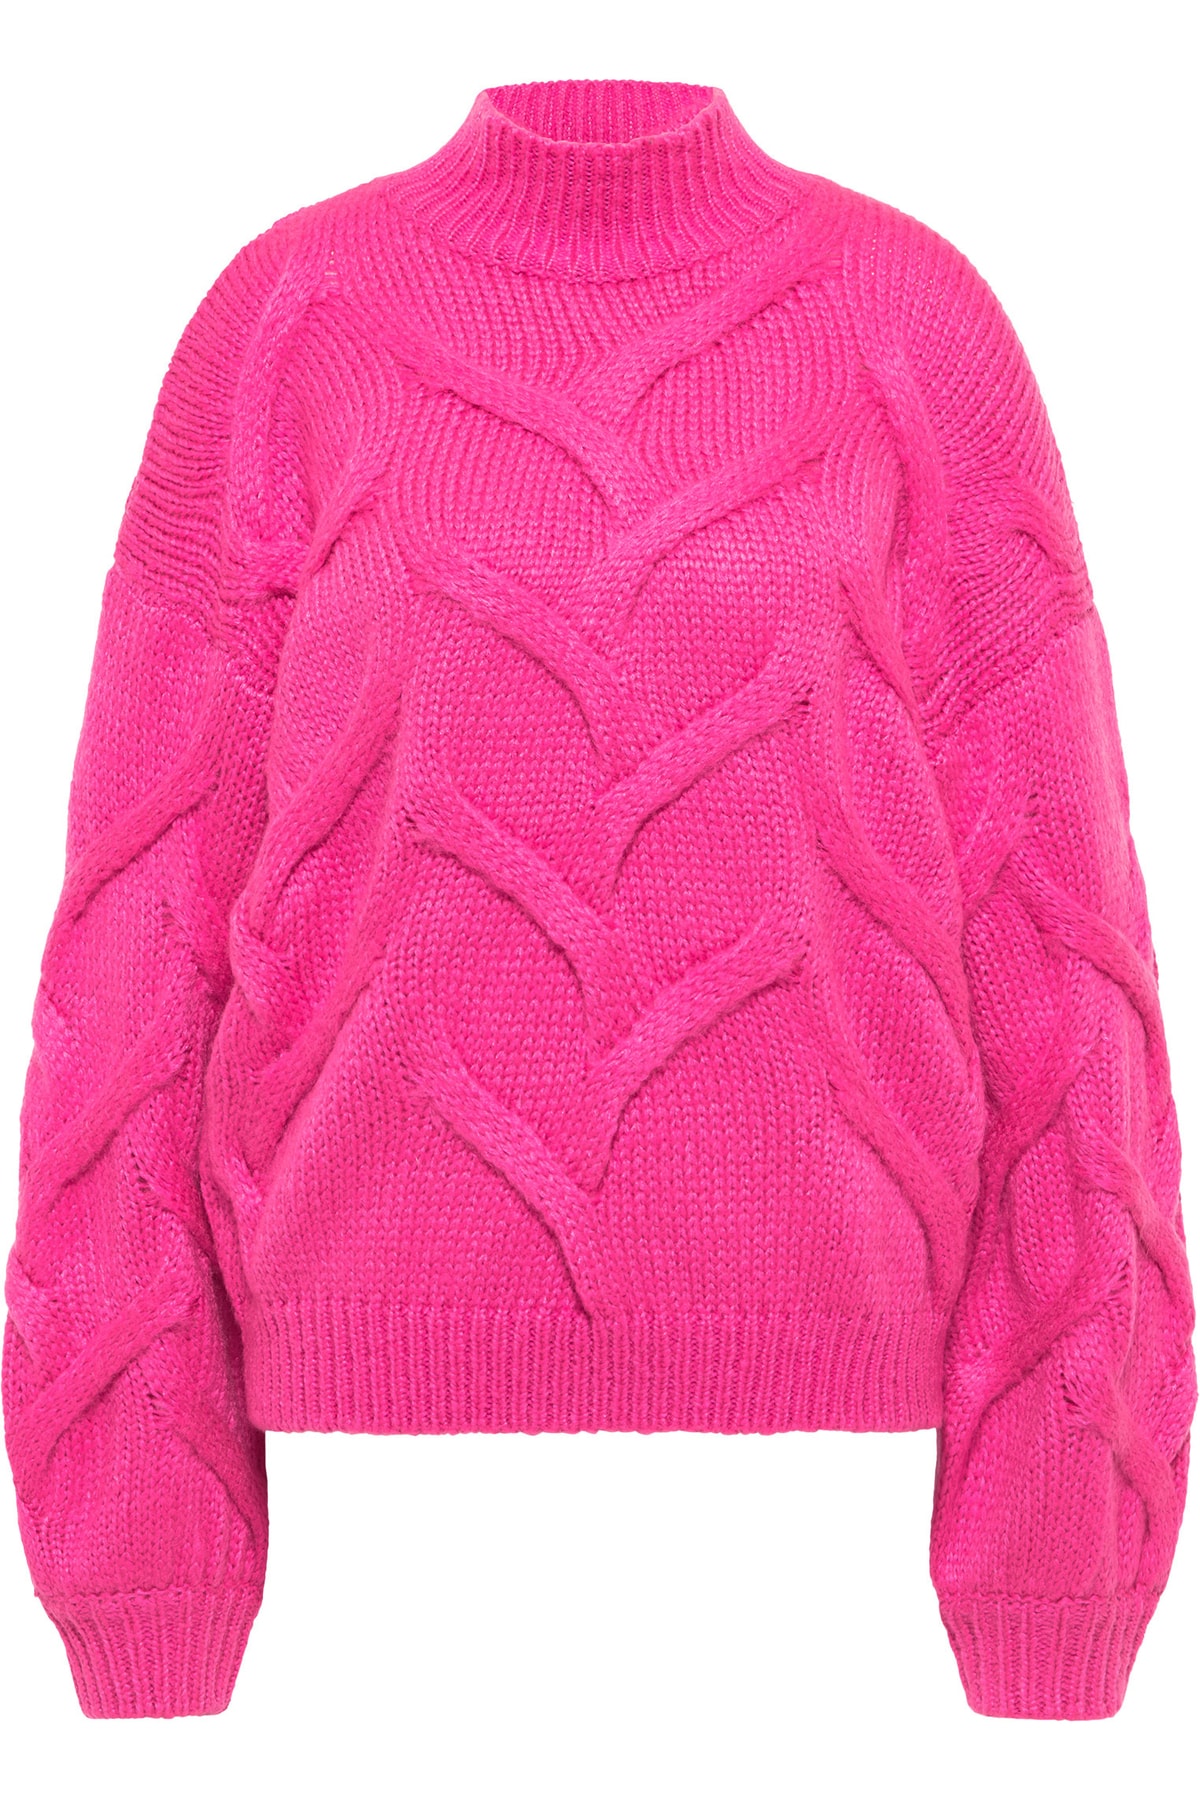 Izia Pullover Rosa Regular Fit Fast ausverkauft